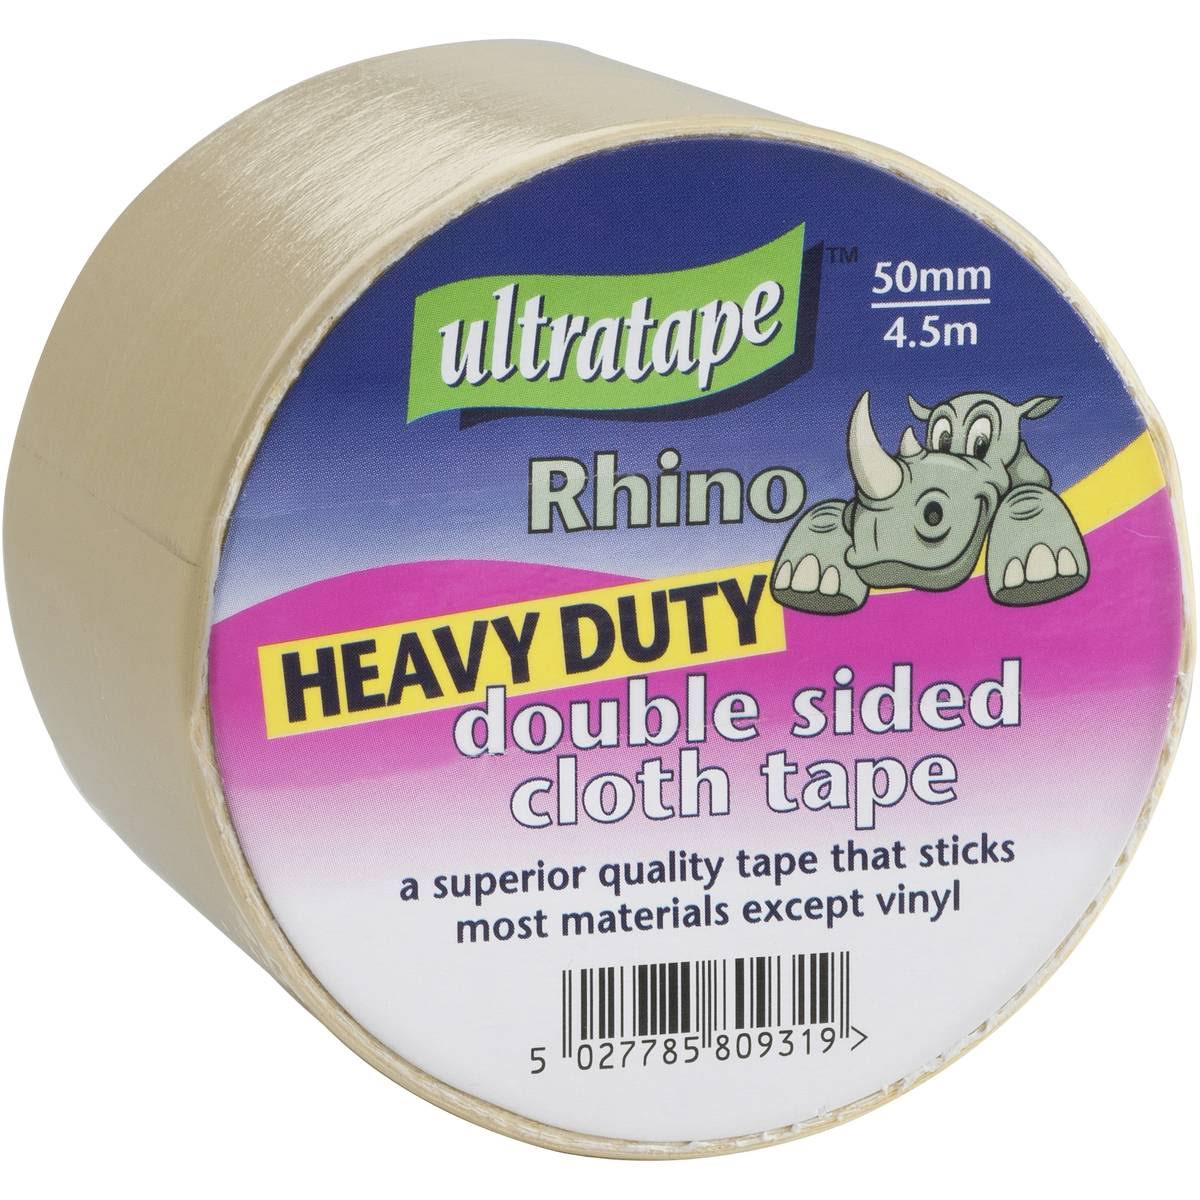 Ultratape Heavy Duty Double-sided Cloth Tape 50mm x 4.5m